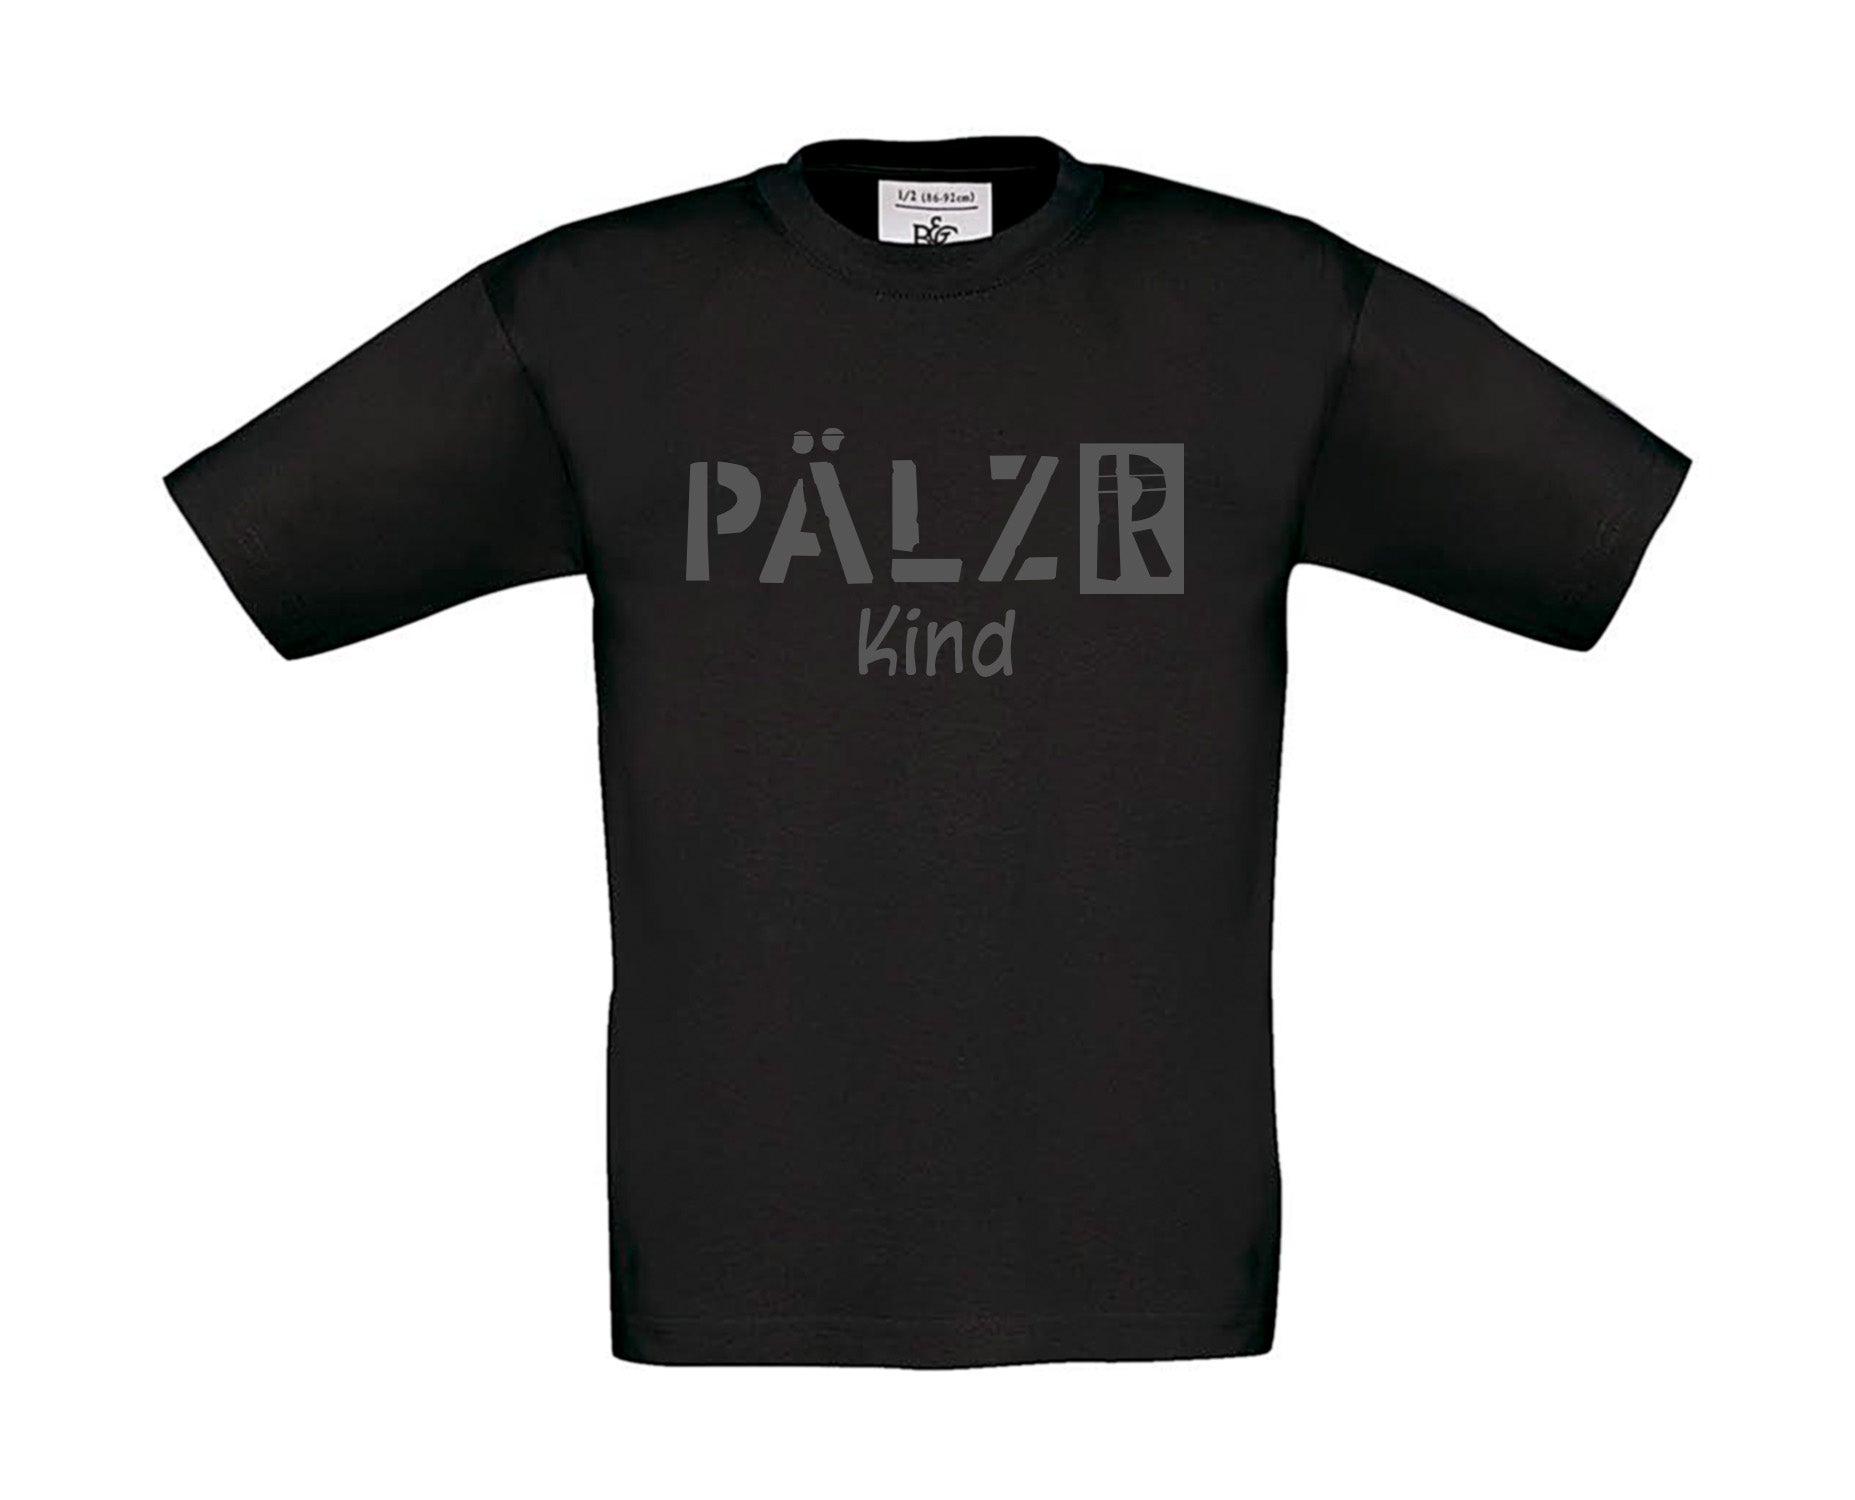 Kinder T-Shirt | PÄLZR Kind | schwarz | Logo anthrazit